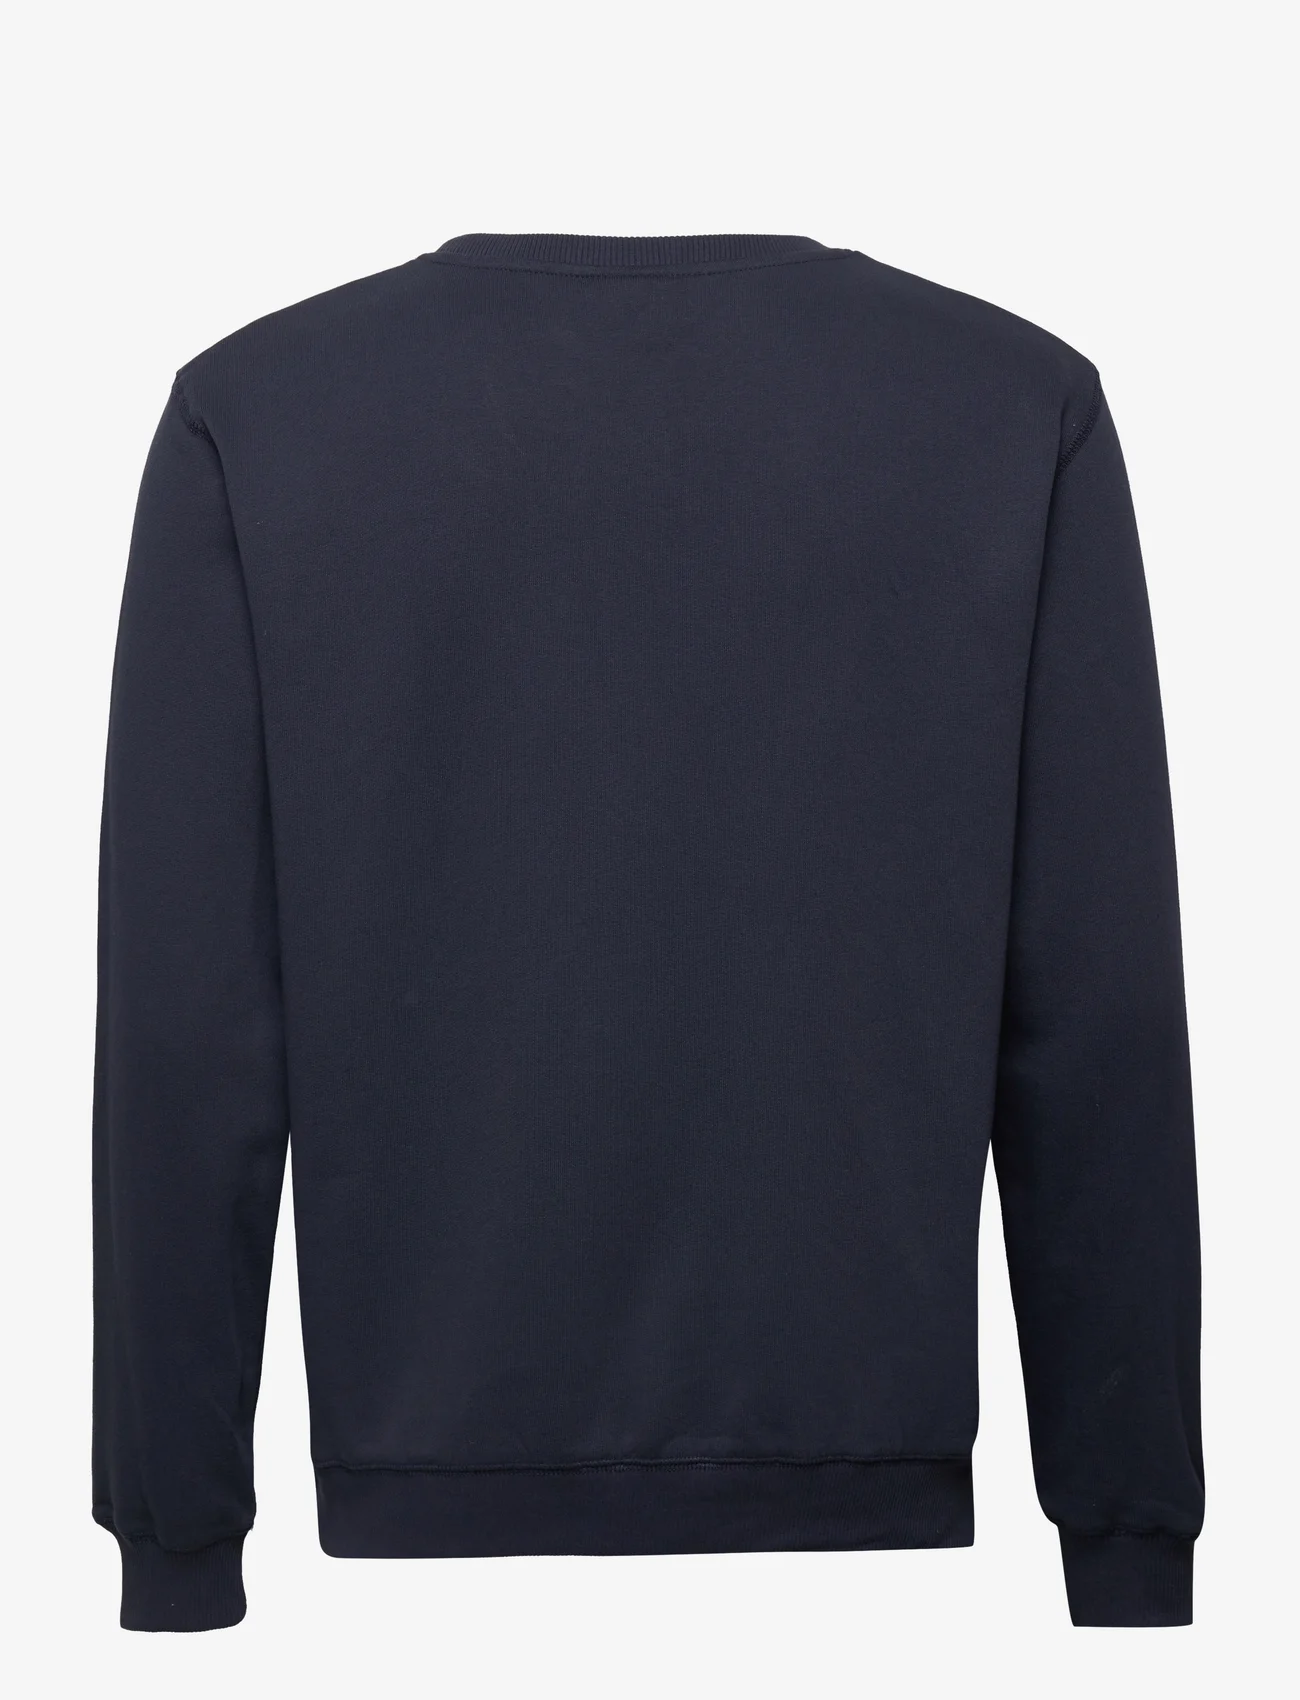 Makia - Brand Sweatshirt - truien en hoodies - dark blue - 1